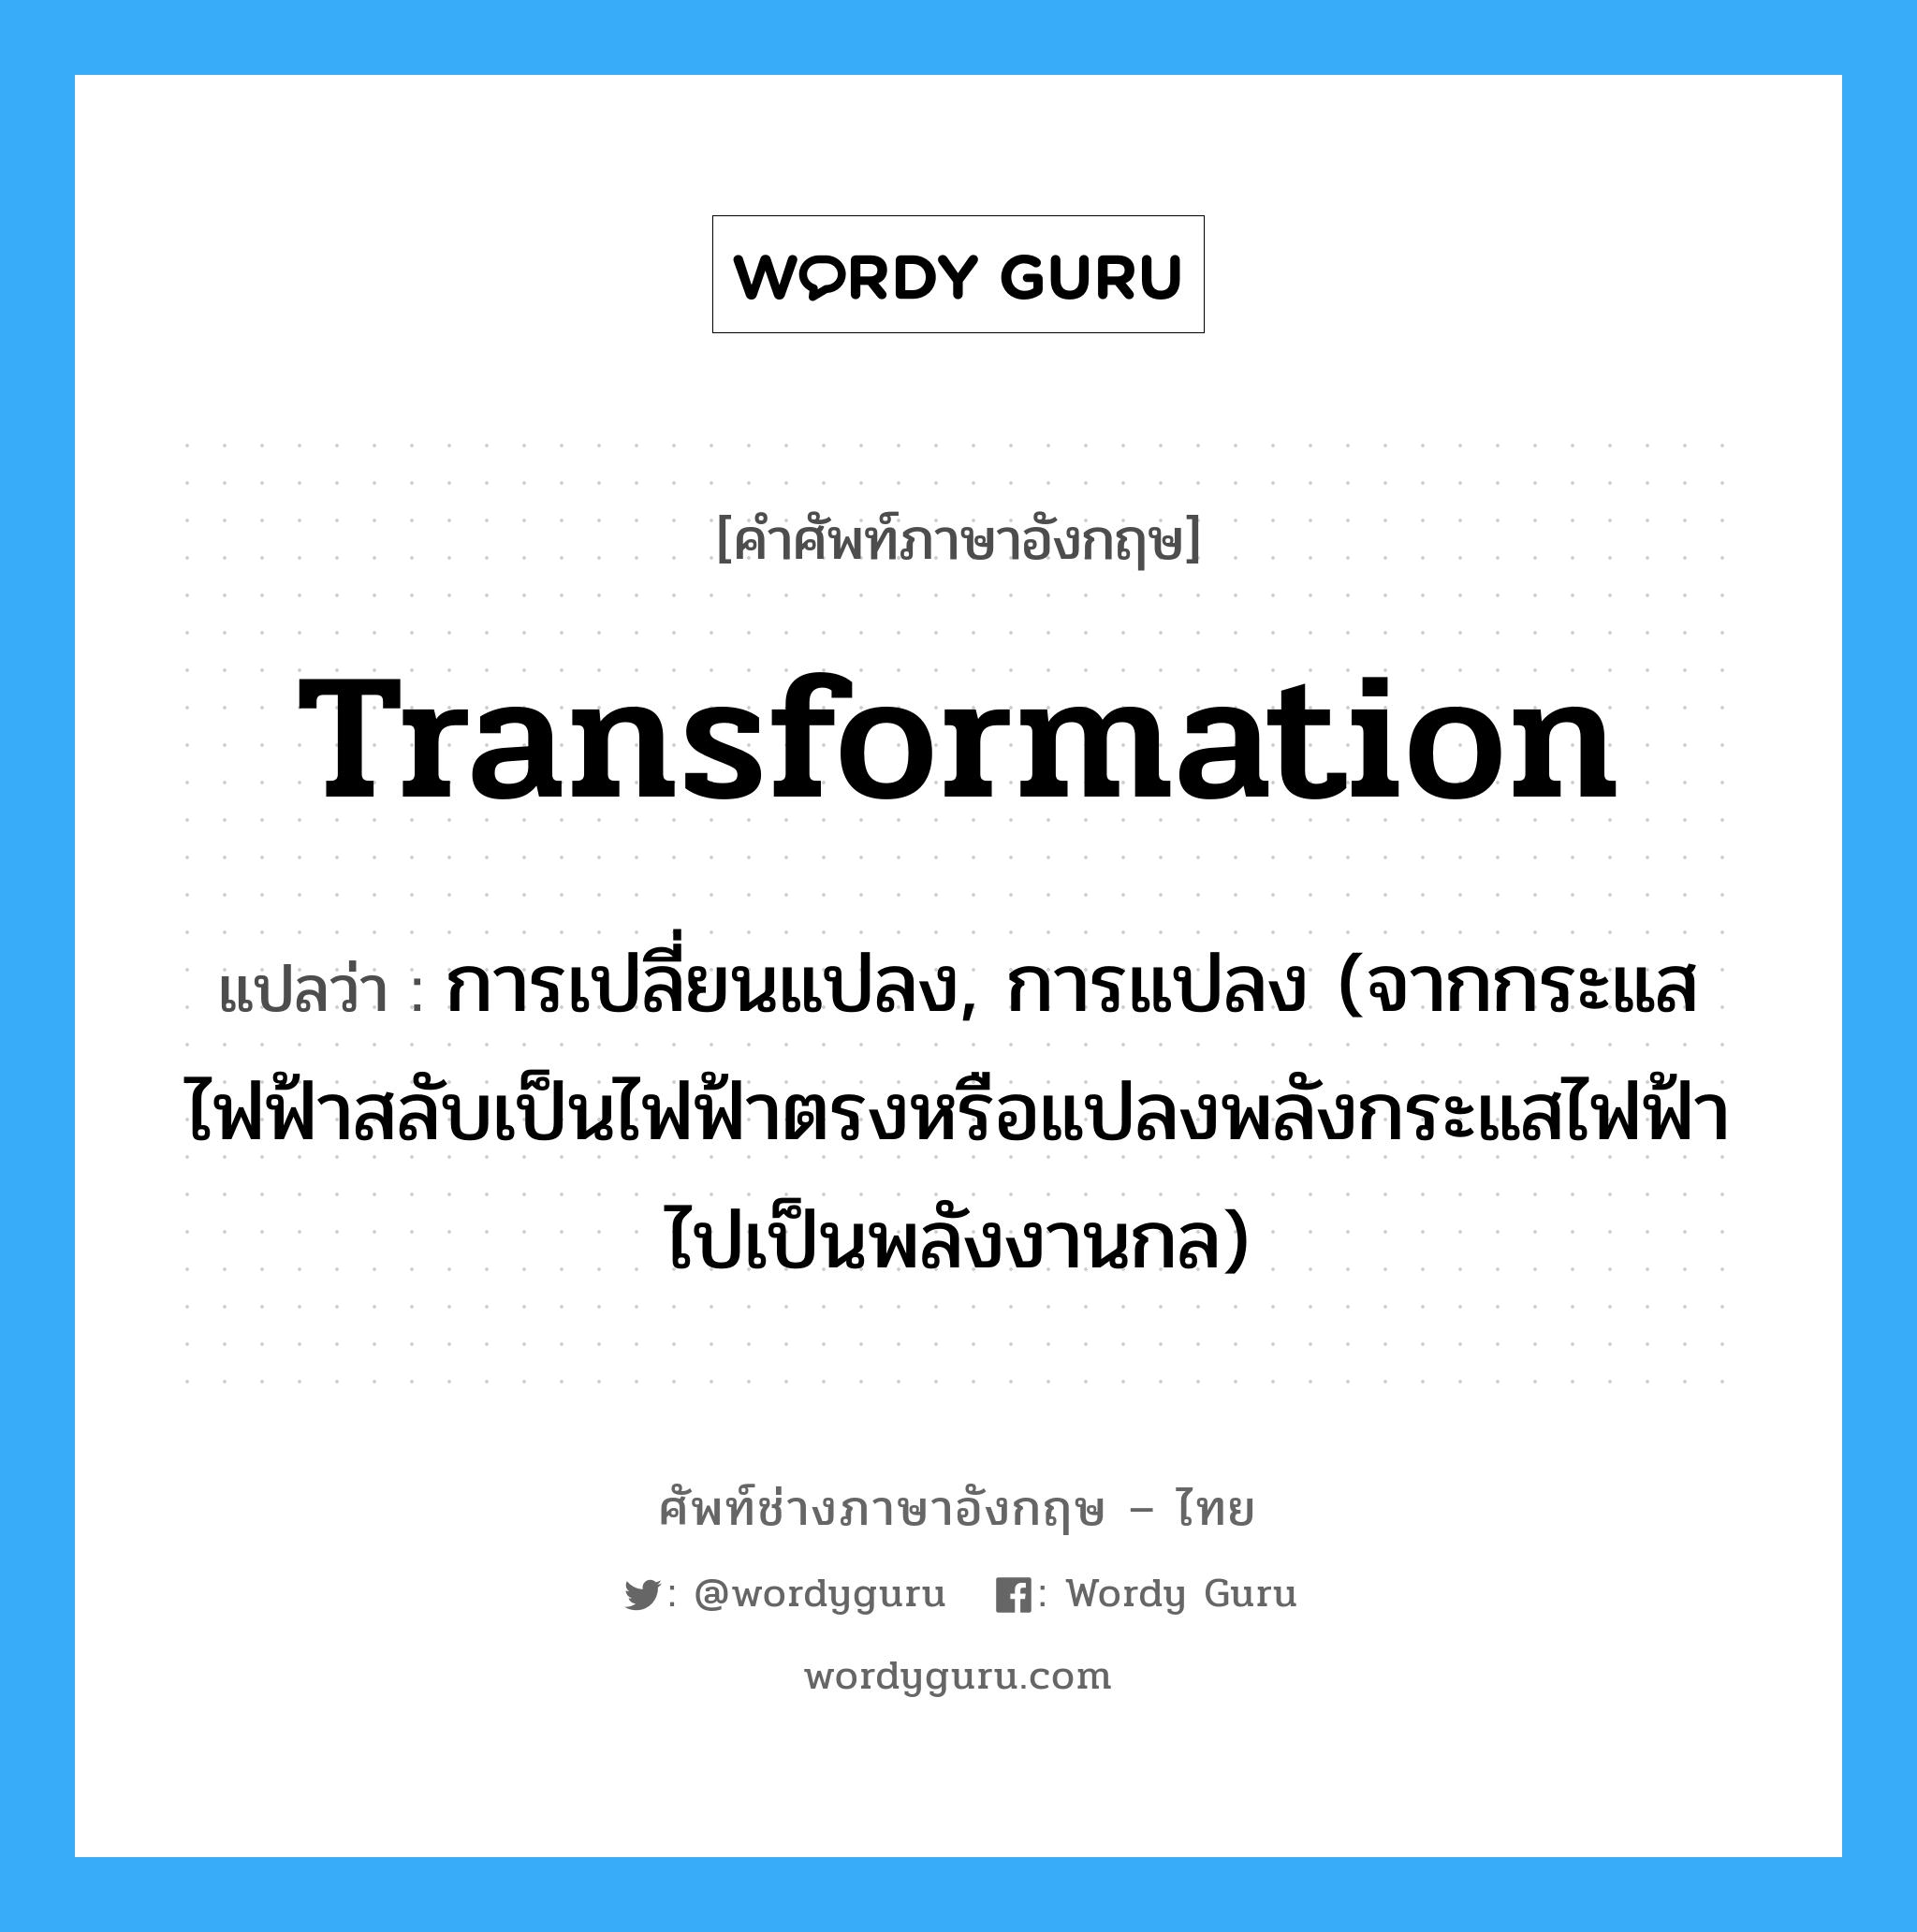 transformation แปลว่า?, คำศัพท์ช่างภาษาอังกฤษ - ไทย transformation คำศัพท์ภาษาอังกฤษ transformation แปลว่า การเปลี่ยนแปลง, การแปลง (จากกระแสไฟฟ้าสลับเป็นไฟฟ้าตรงหรือแปลงพลังกระแสไฟฟ้าไปเป็นพลังงานกล)